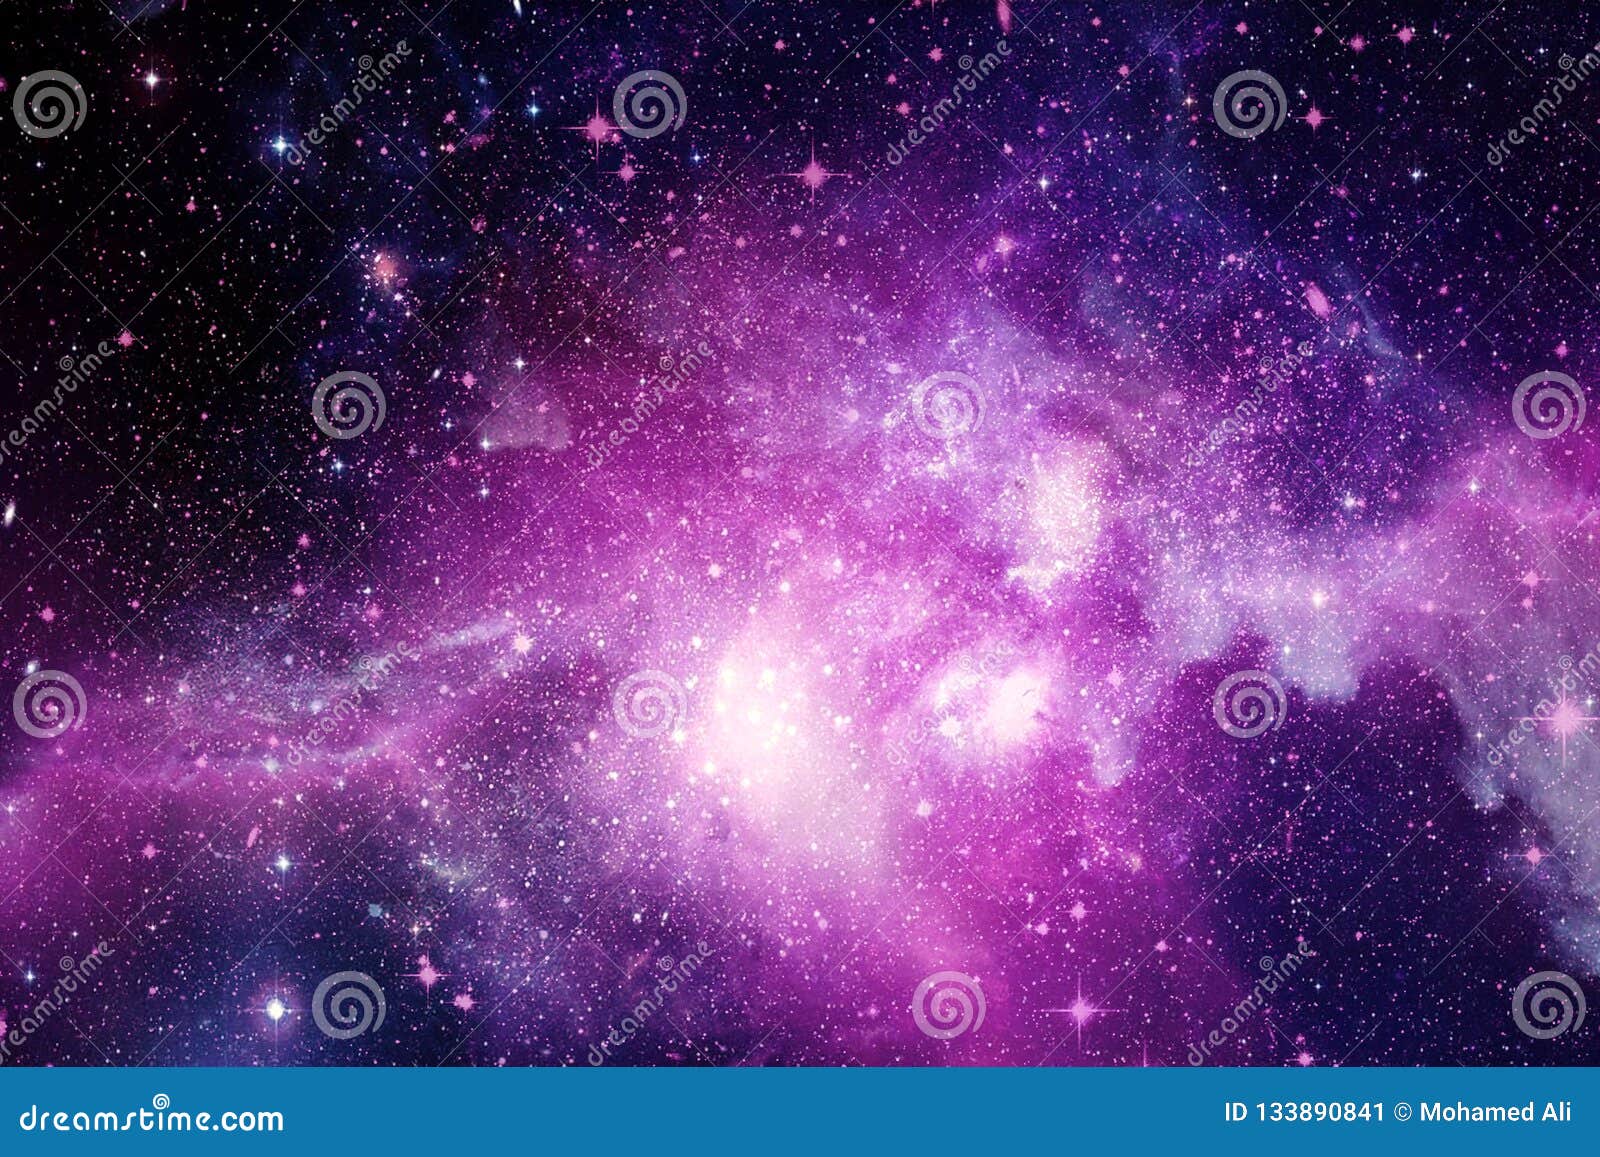 Featured image of post Fundo Galaxia Rosa Baixe este arquivo de psd gr tis sobre fundo abstrato gal xia roxo e rosa quadrado e descubra mais de 9 milh es de recursos gr ficos profissionais no freepik